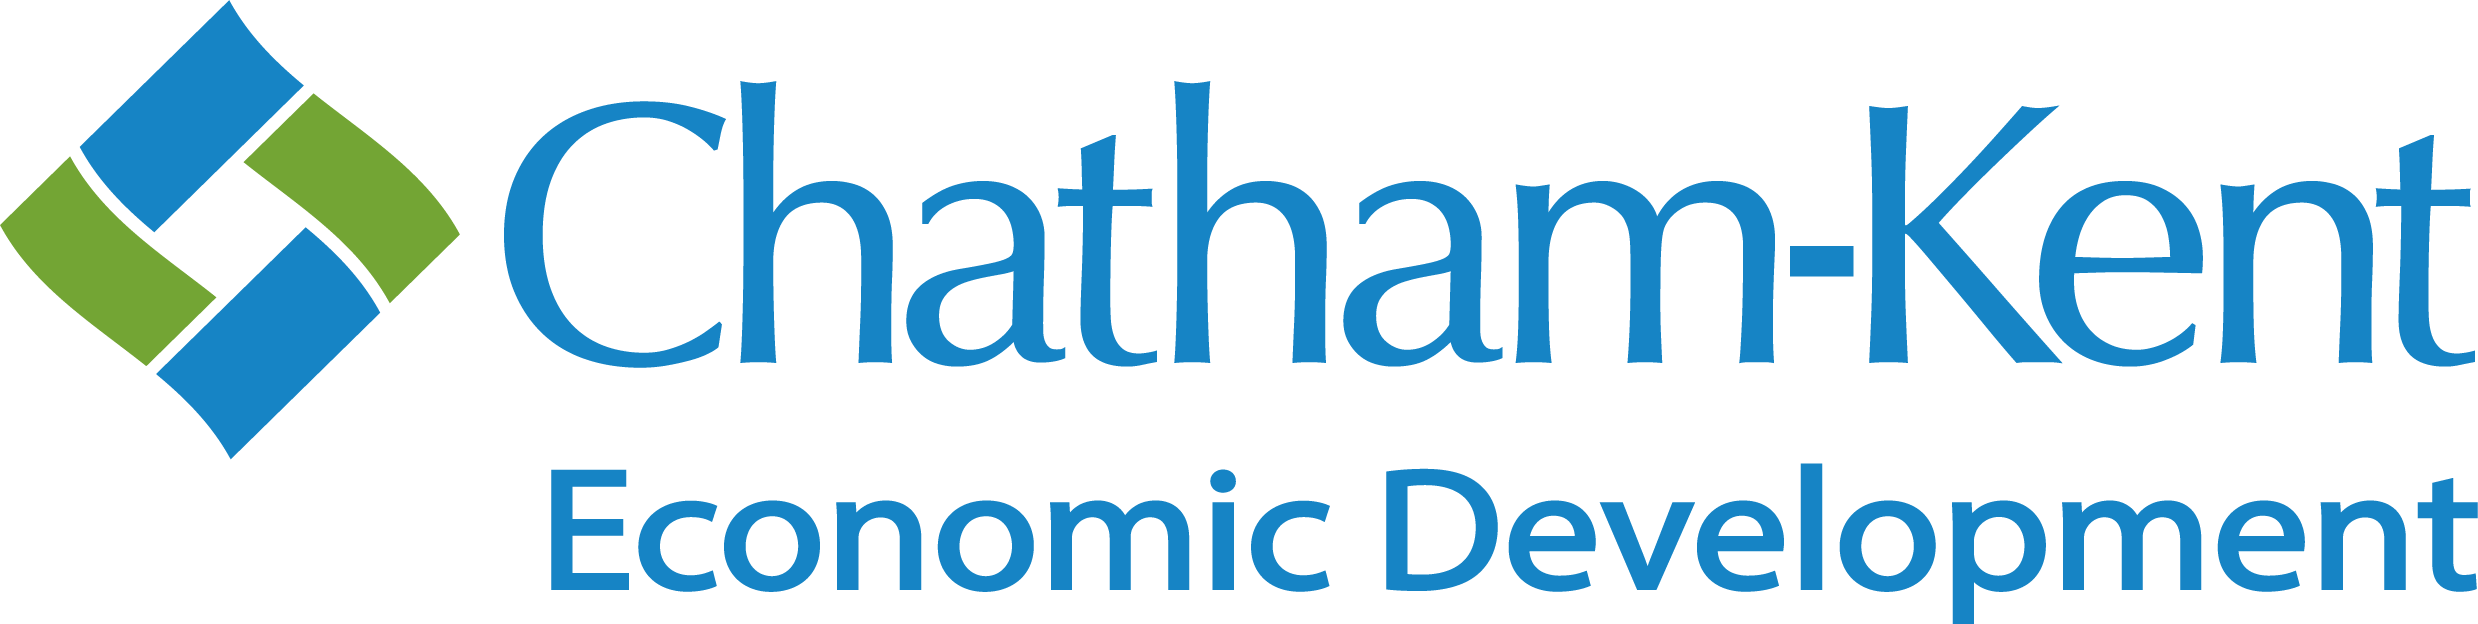 Municipality of Chatham-Kent, Economic Development logo.